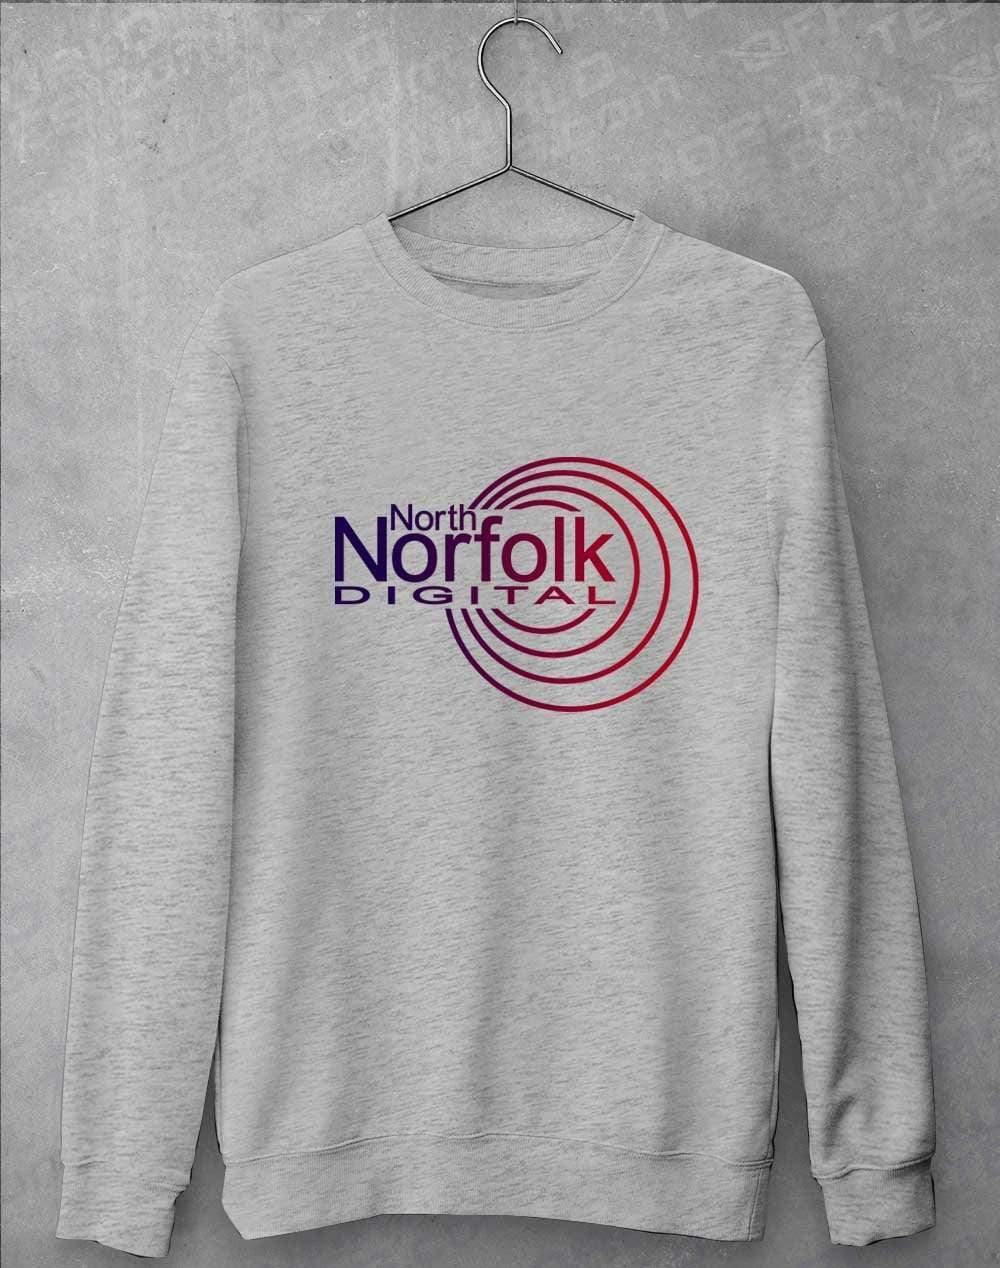 North Norfolk Digital Sweatshirt S / Heather Grey  - Off World Tees